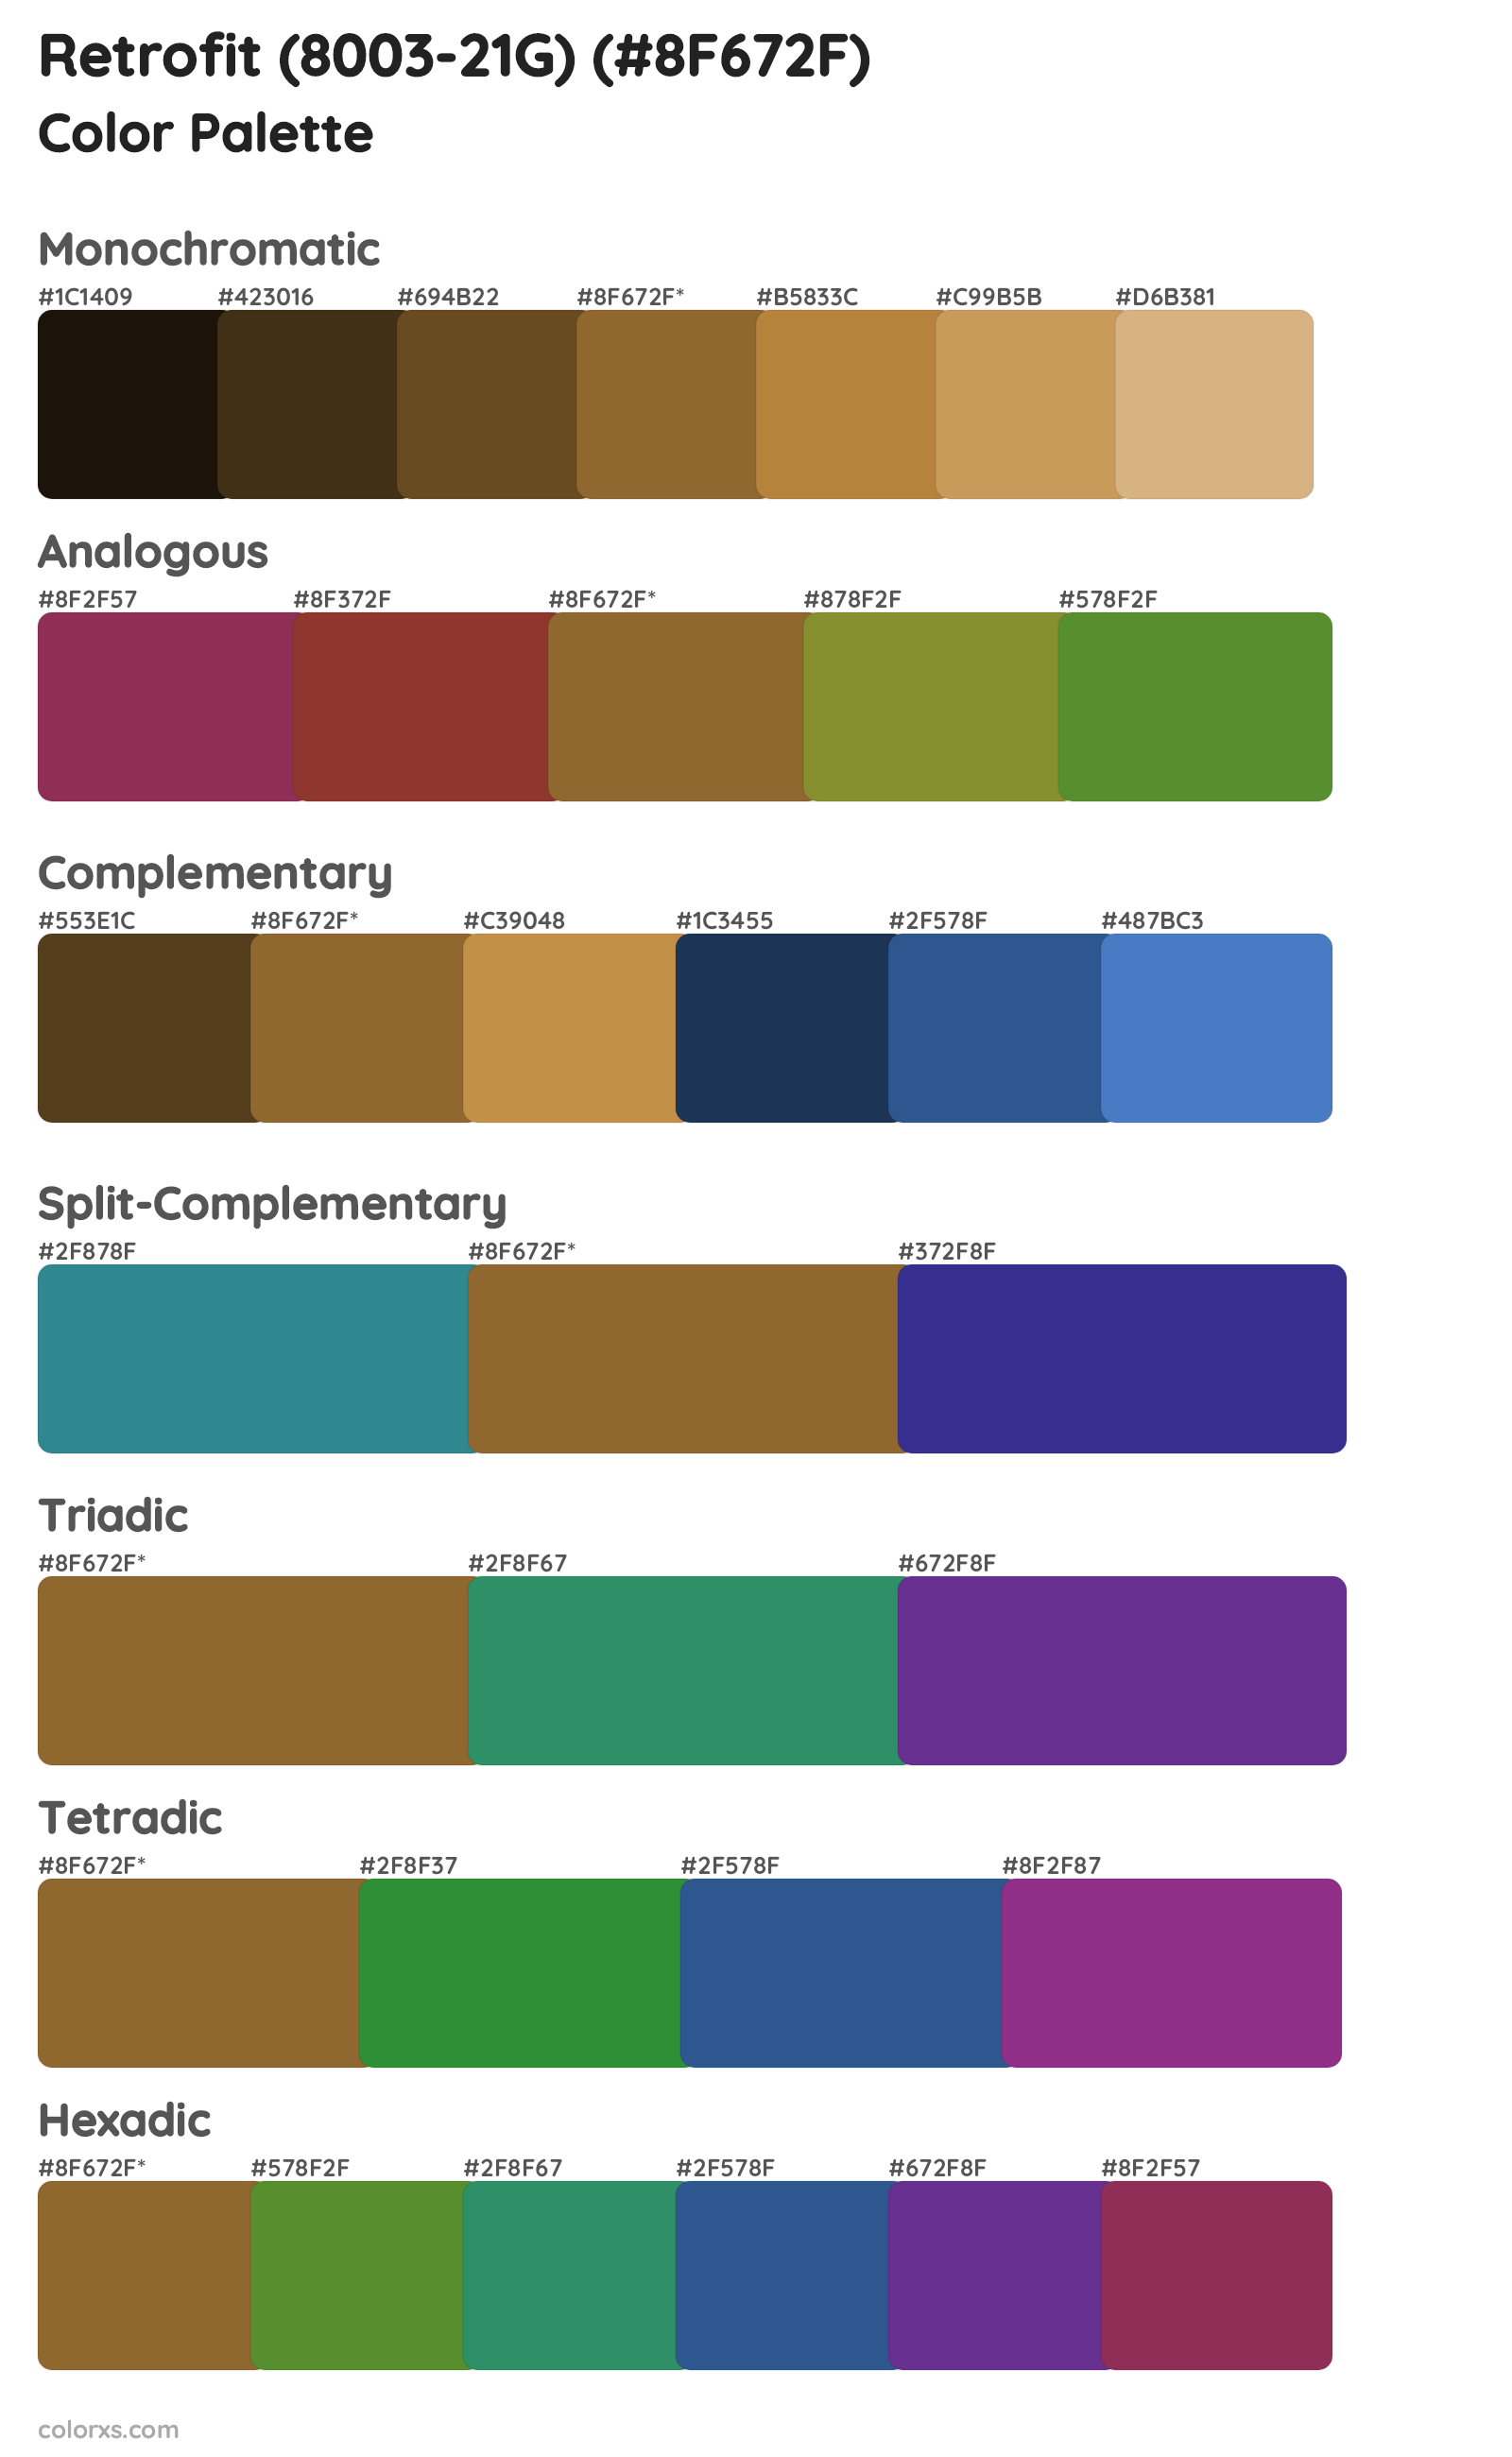 Retrofit (8003-21G) Color Scheme Palettes